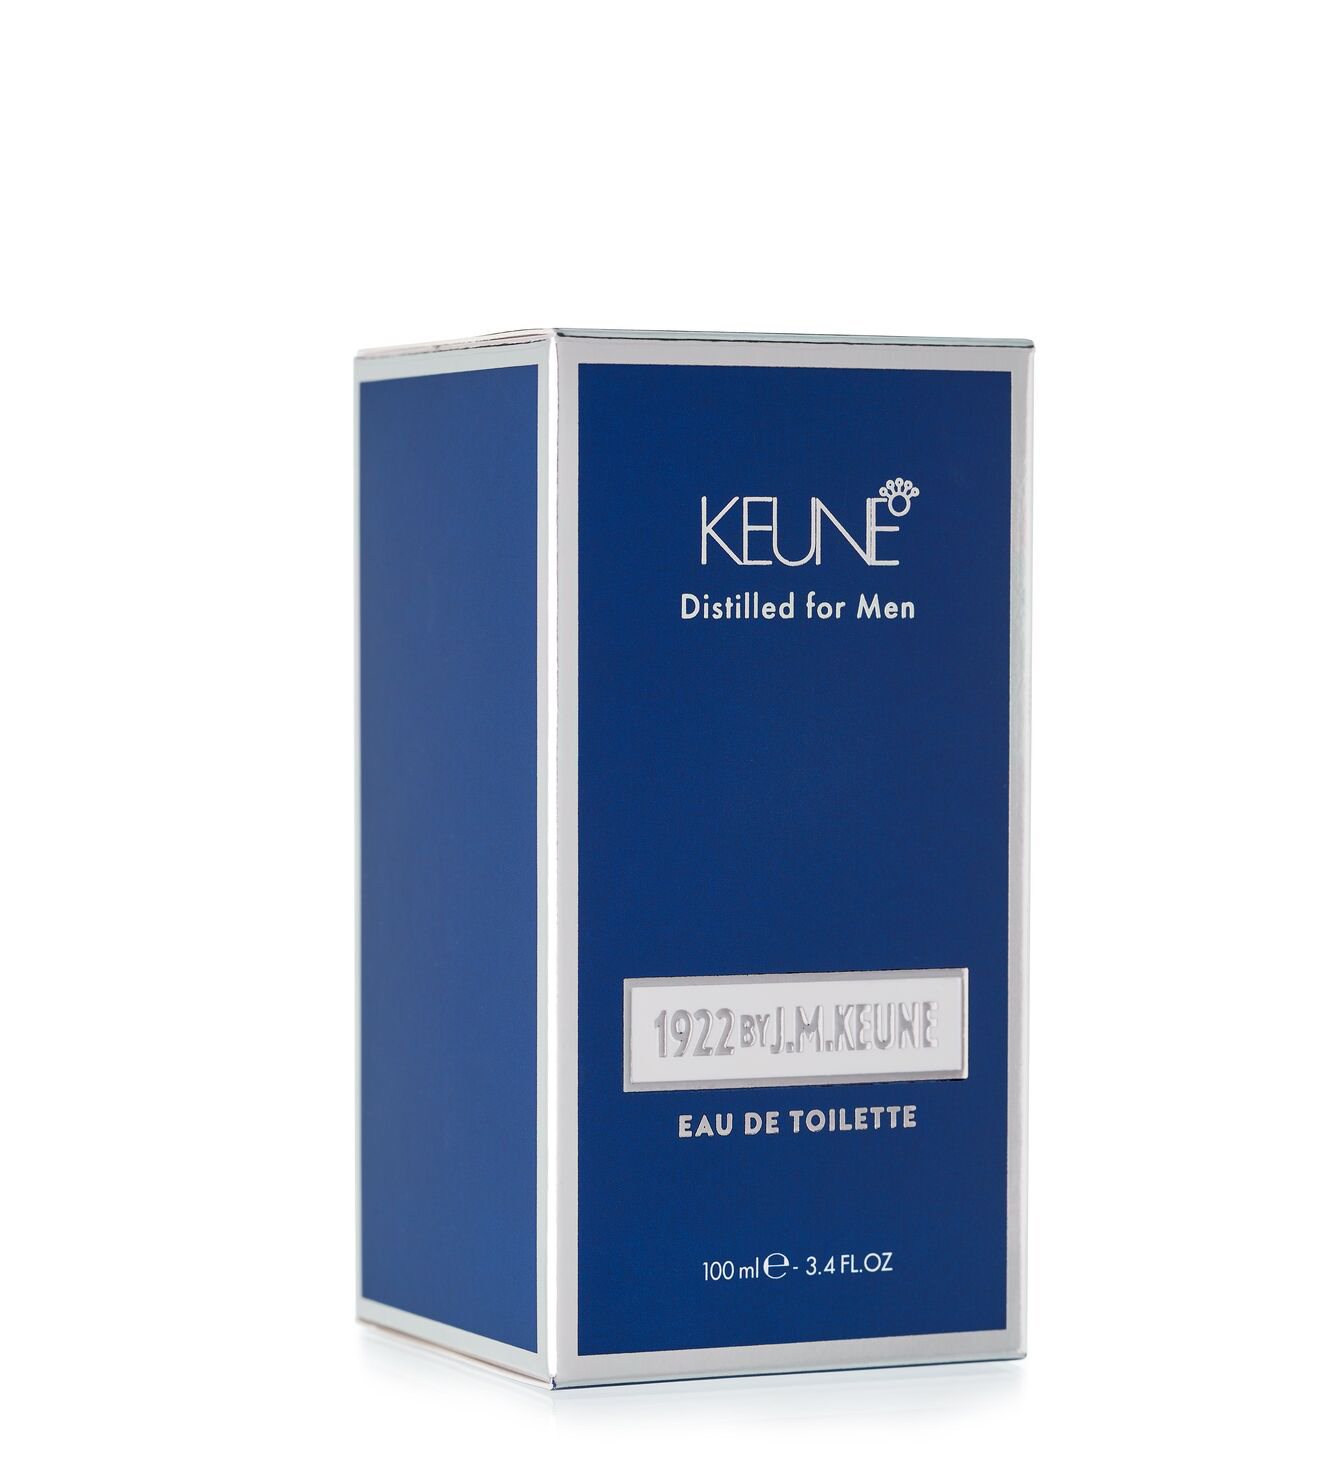 L'Eau de Toilette 1922 : un parfum masculin pour l'homme contemporain. L'ajout idéal aux produits de 1922 by J.M. Keune. Disponible en flacon de verre de 100 ml - parfum pour hommes.